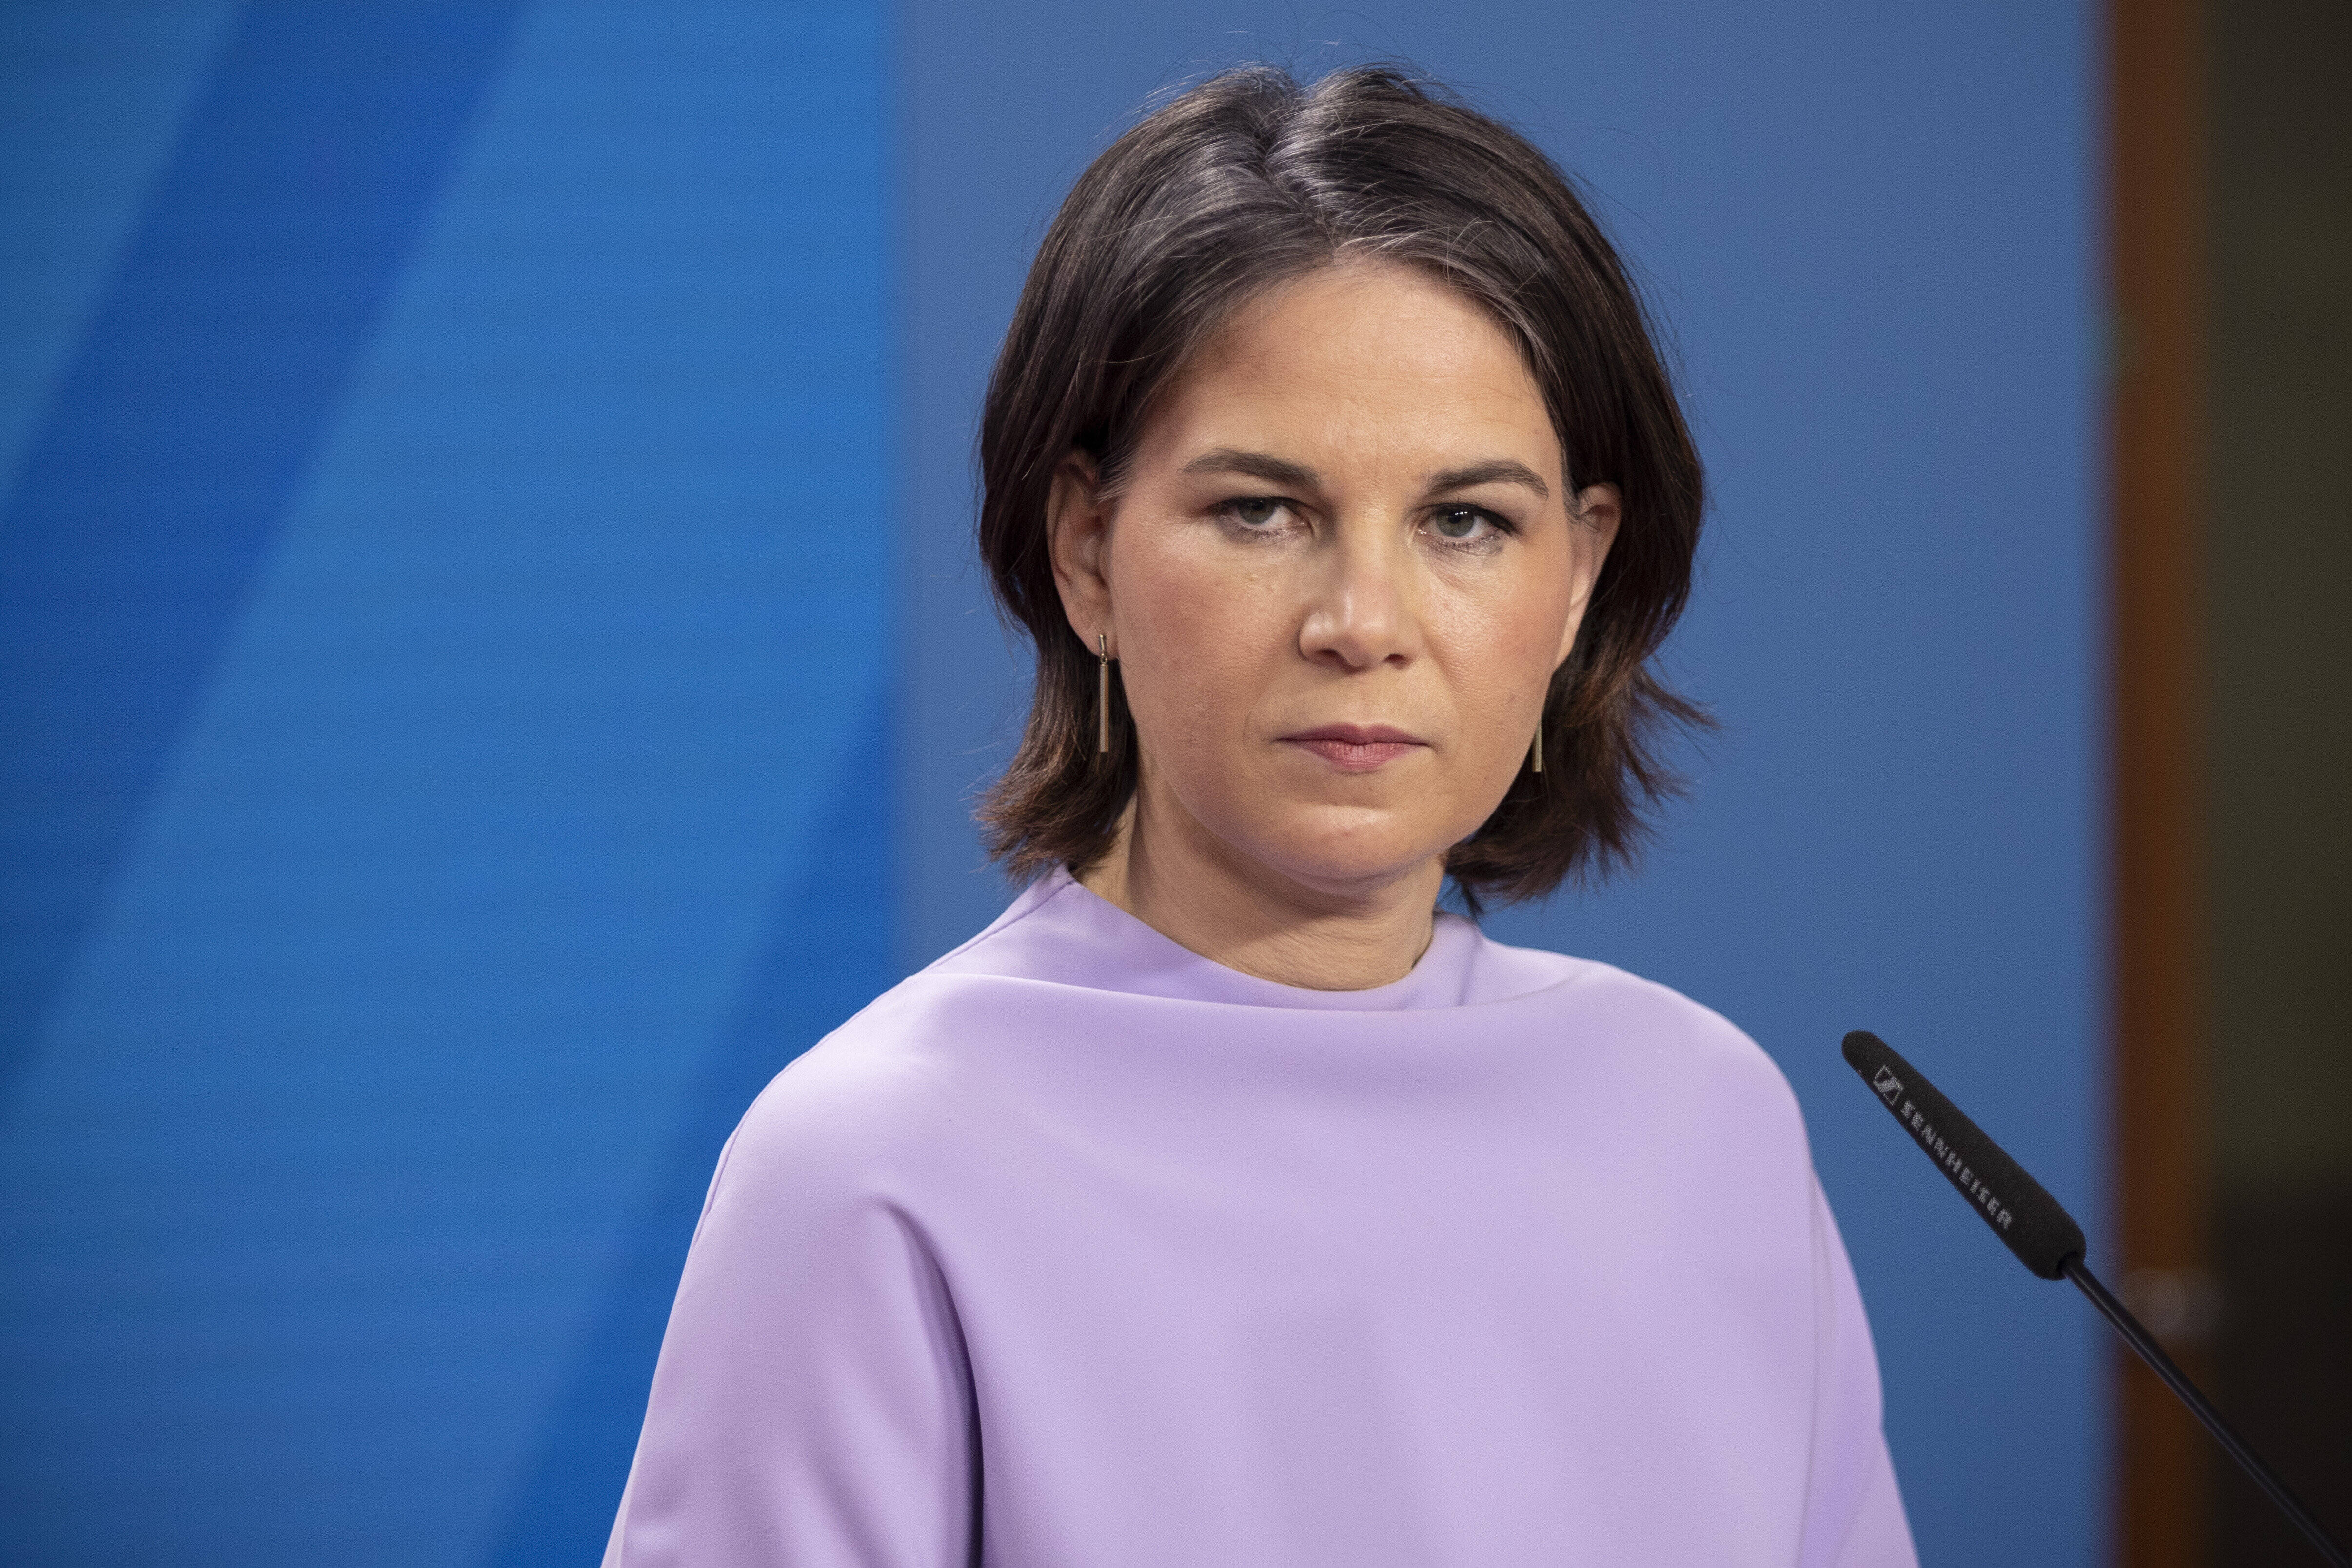 Schallende Ohrfeige für Annalena Baerbock! CDU behaupte: "Sie ist als Außenministerin untragbar"!